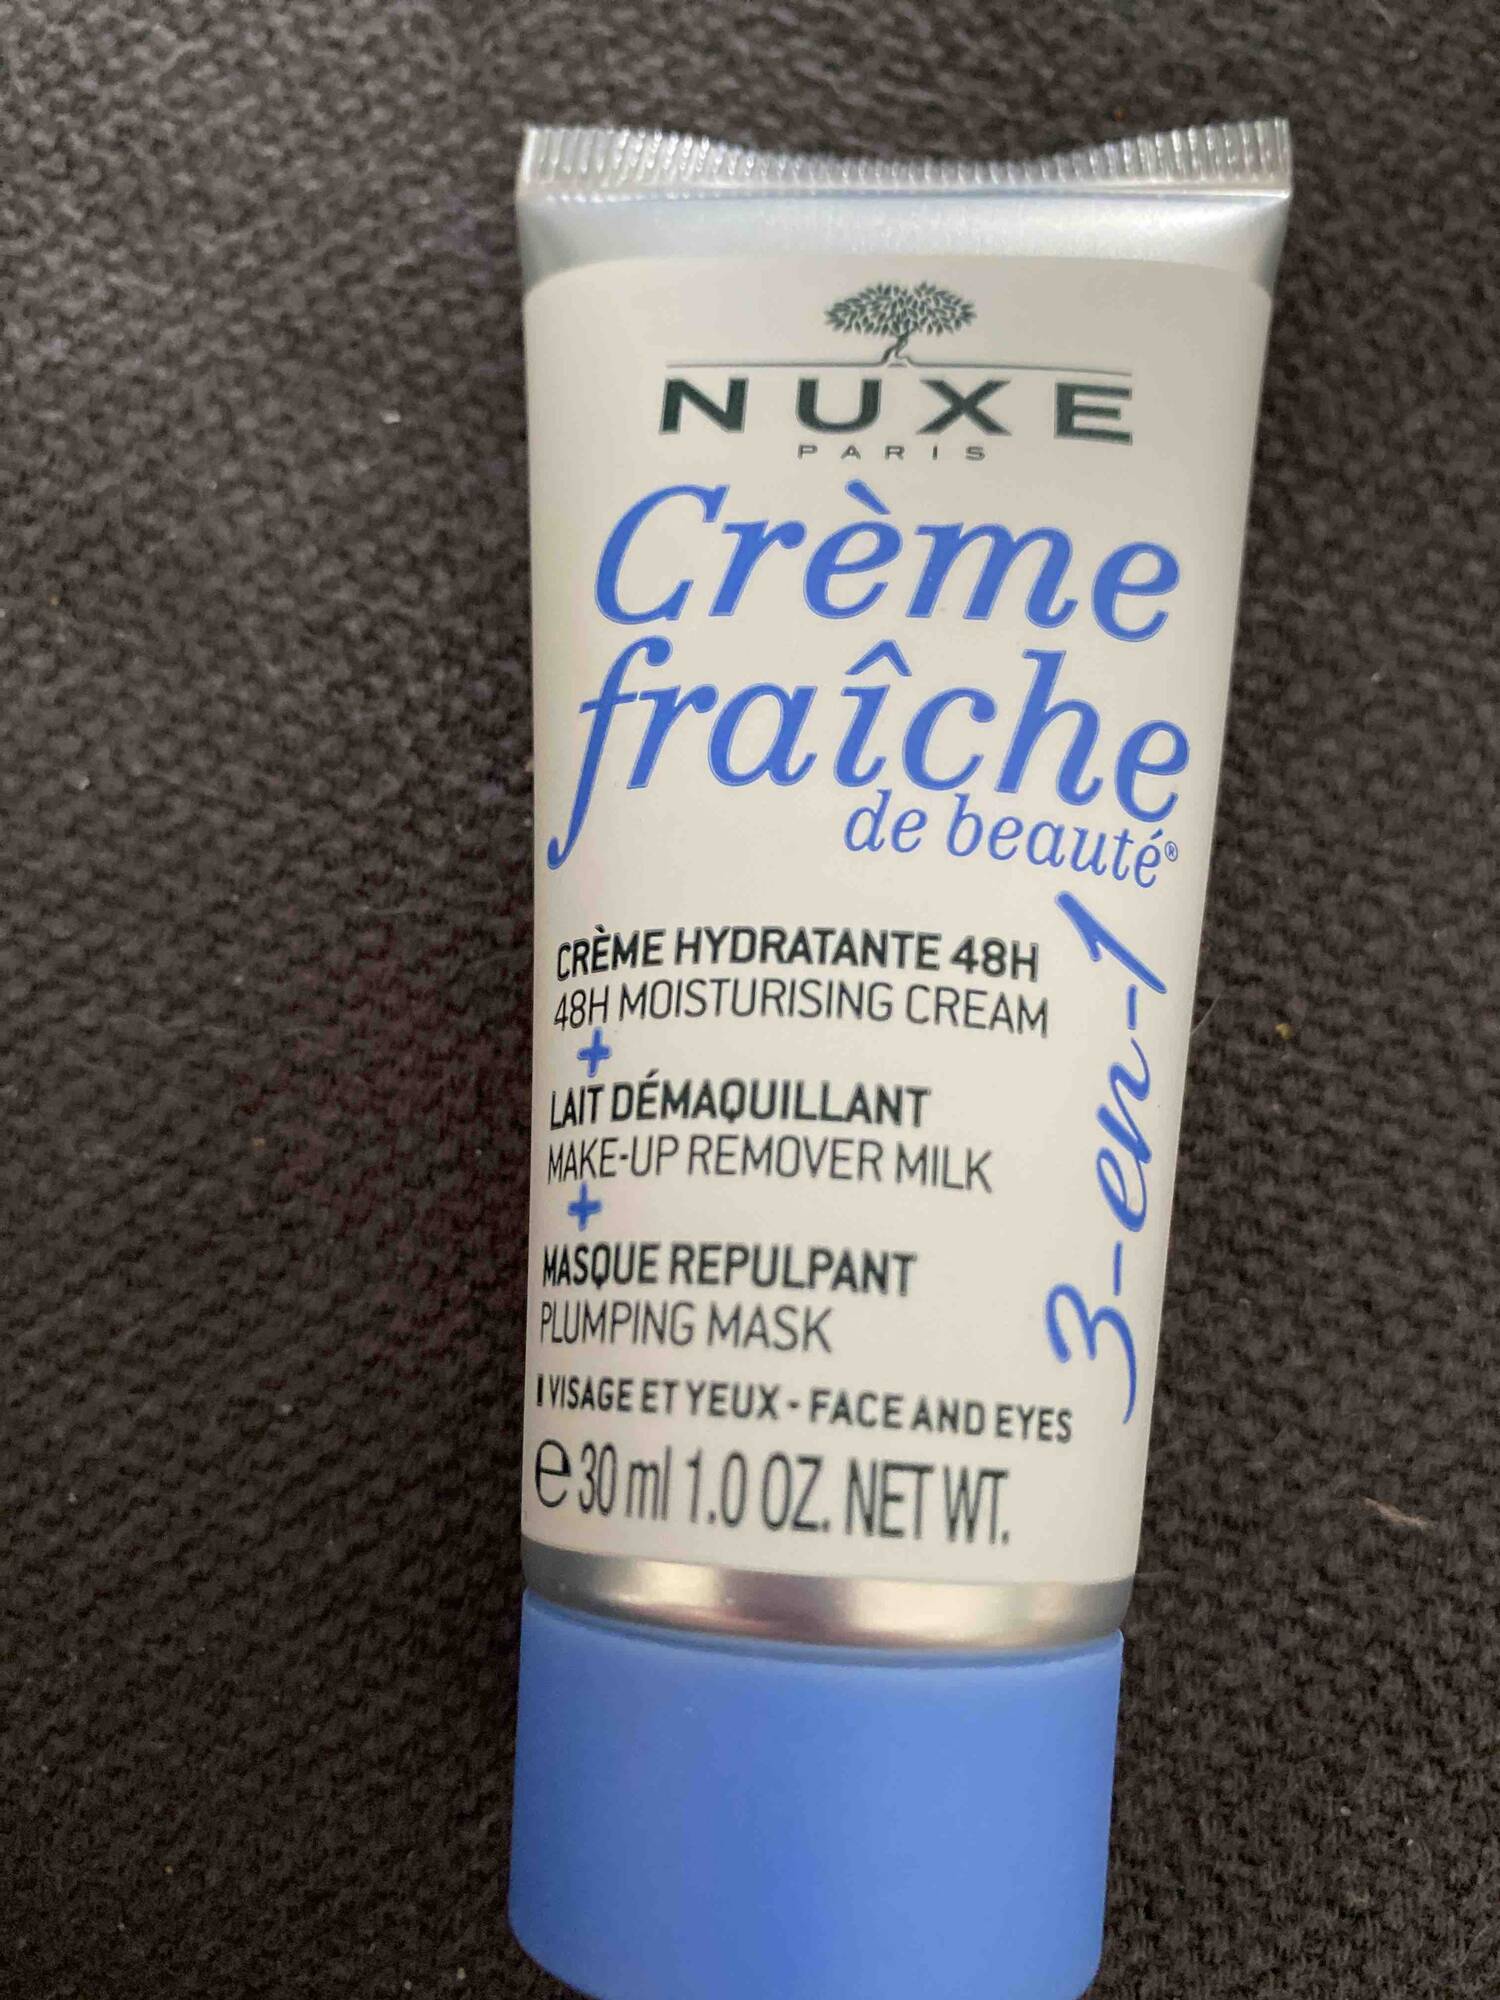 NUXE PARIS - Crème fraîche de beauté